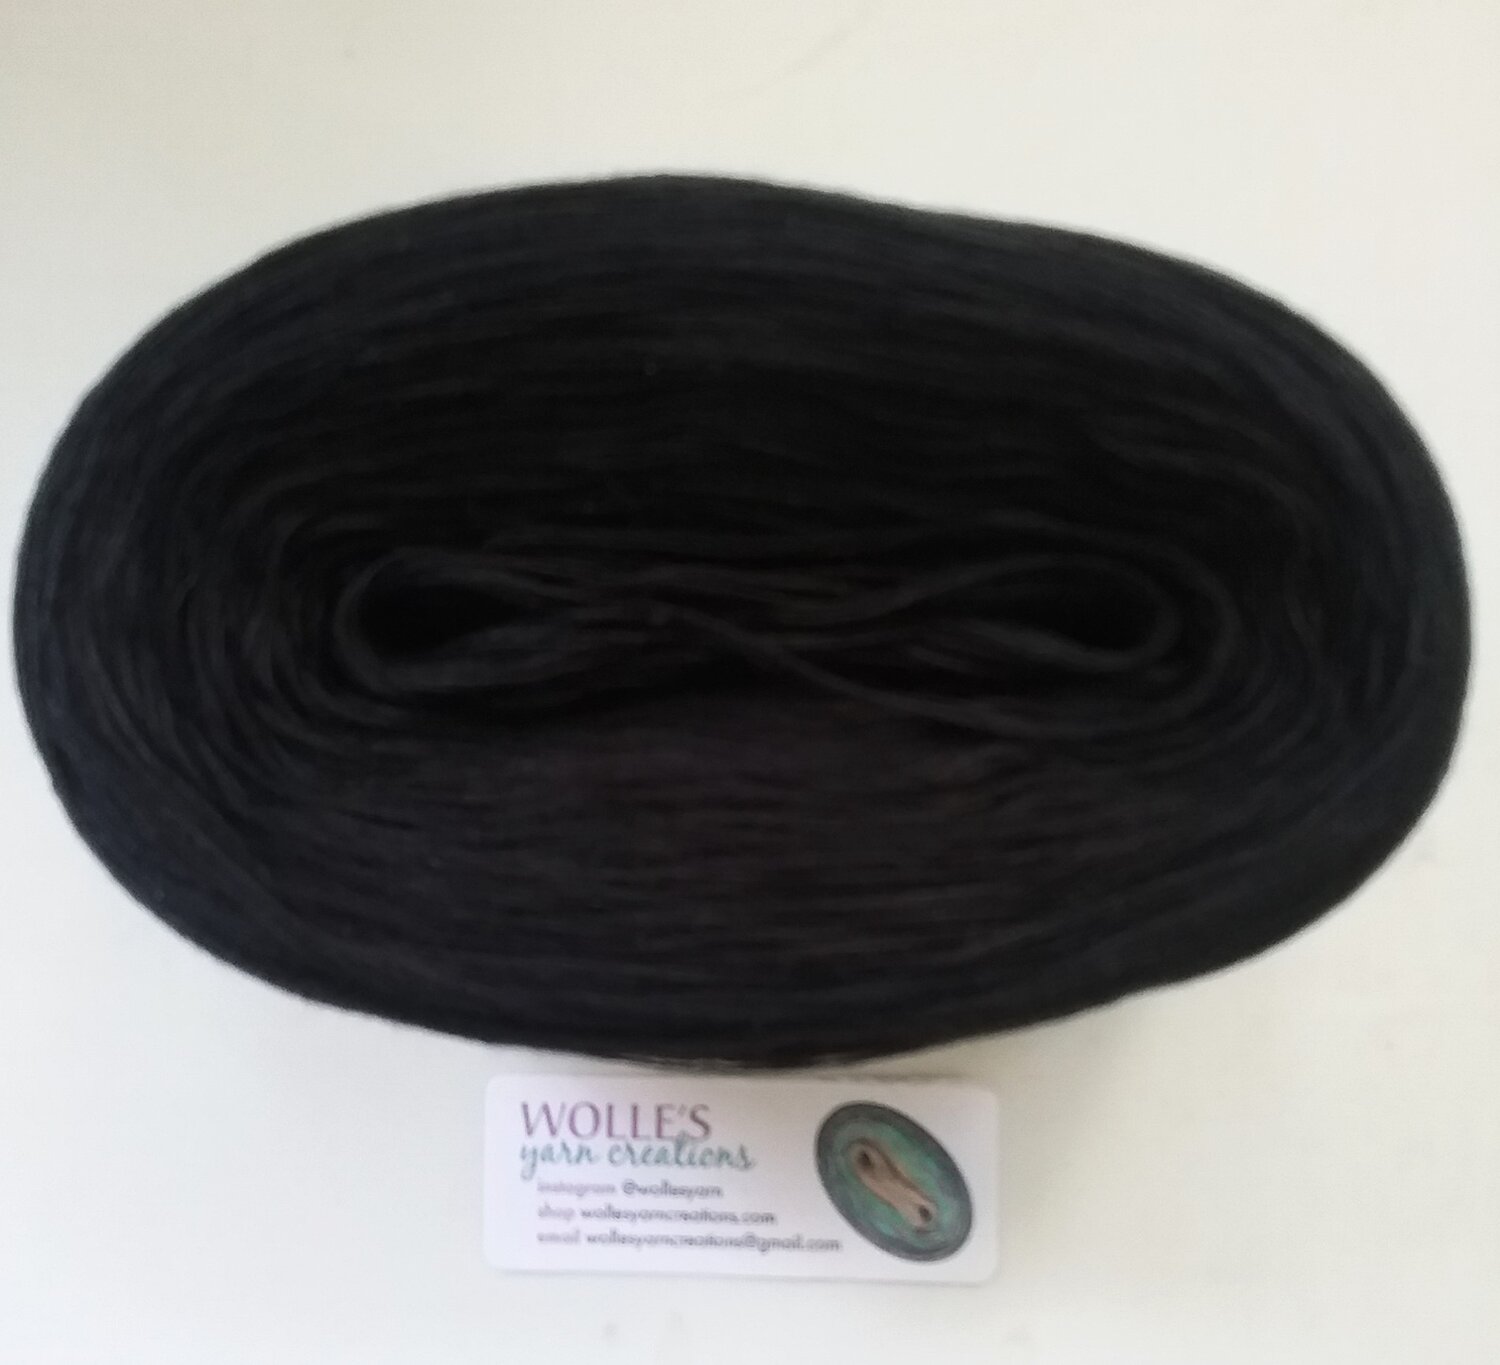 Black Wool Yarn 